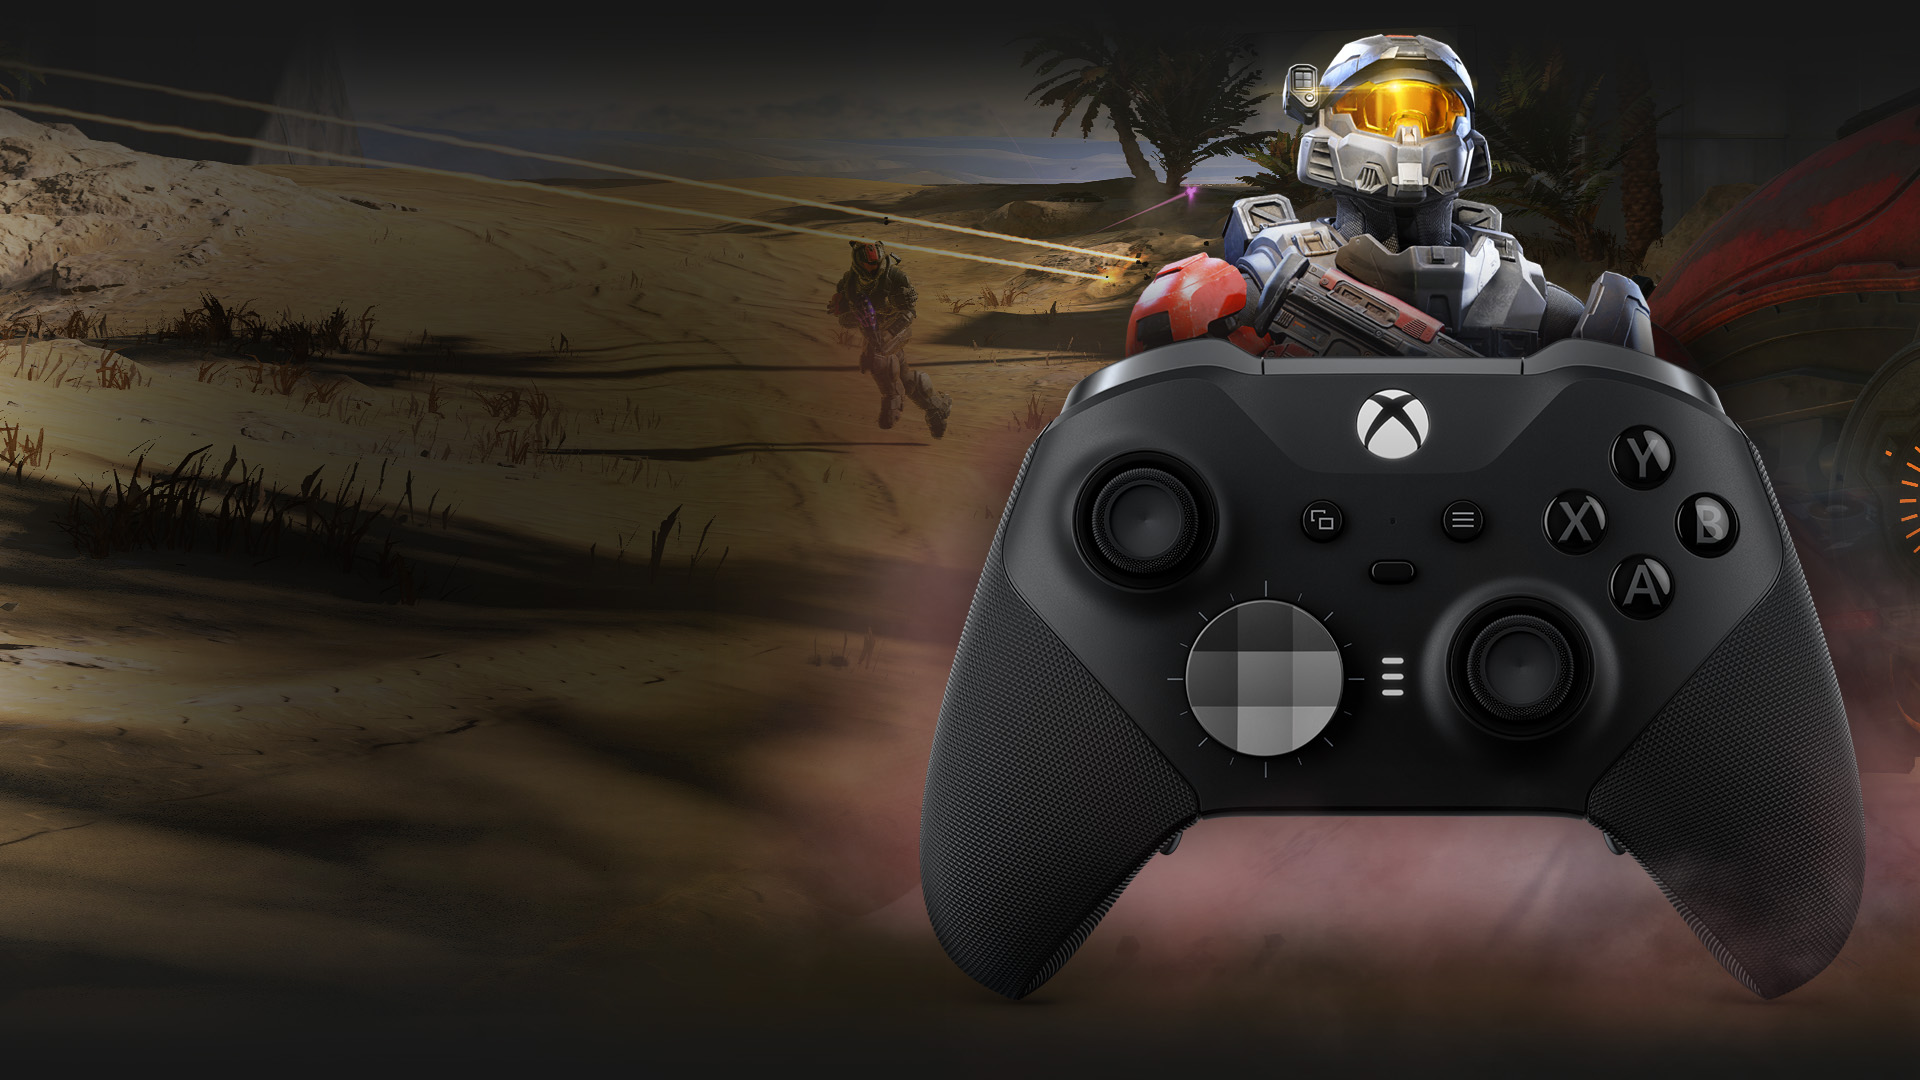 Xbox Elite ワイヤレス コントローラー シリーズ 2 の背後に立つマルチプレイヤー モードのスパルタン。背景の砂漠で雌雄を決する 2 つのチームのスパルタン。